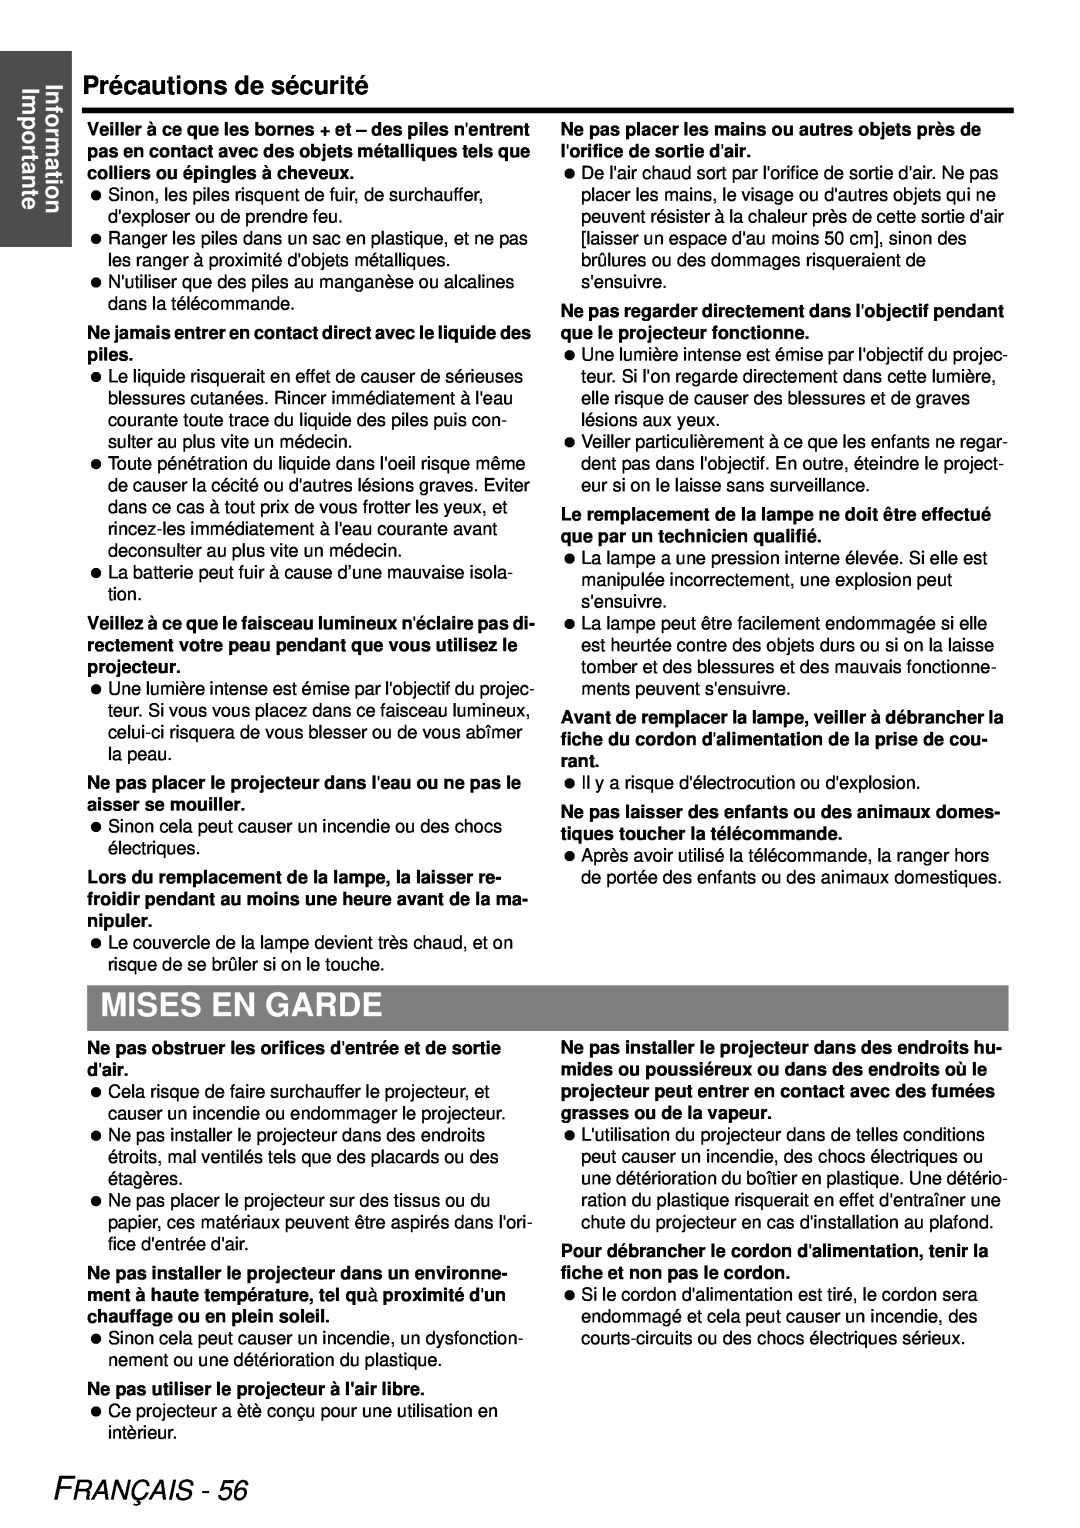 Panasonic PT-LB78U manual Mises En Garde, Précautions de sécurité, Français, Information Importante 